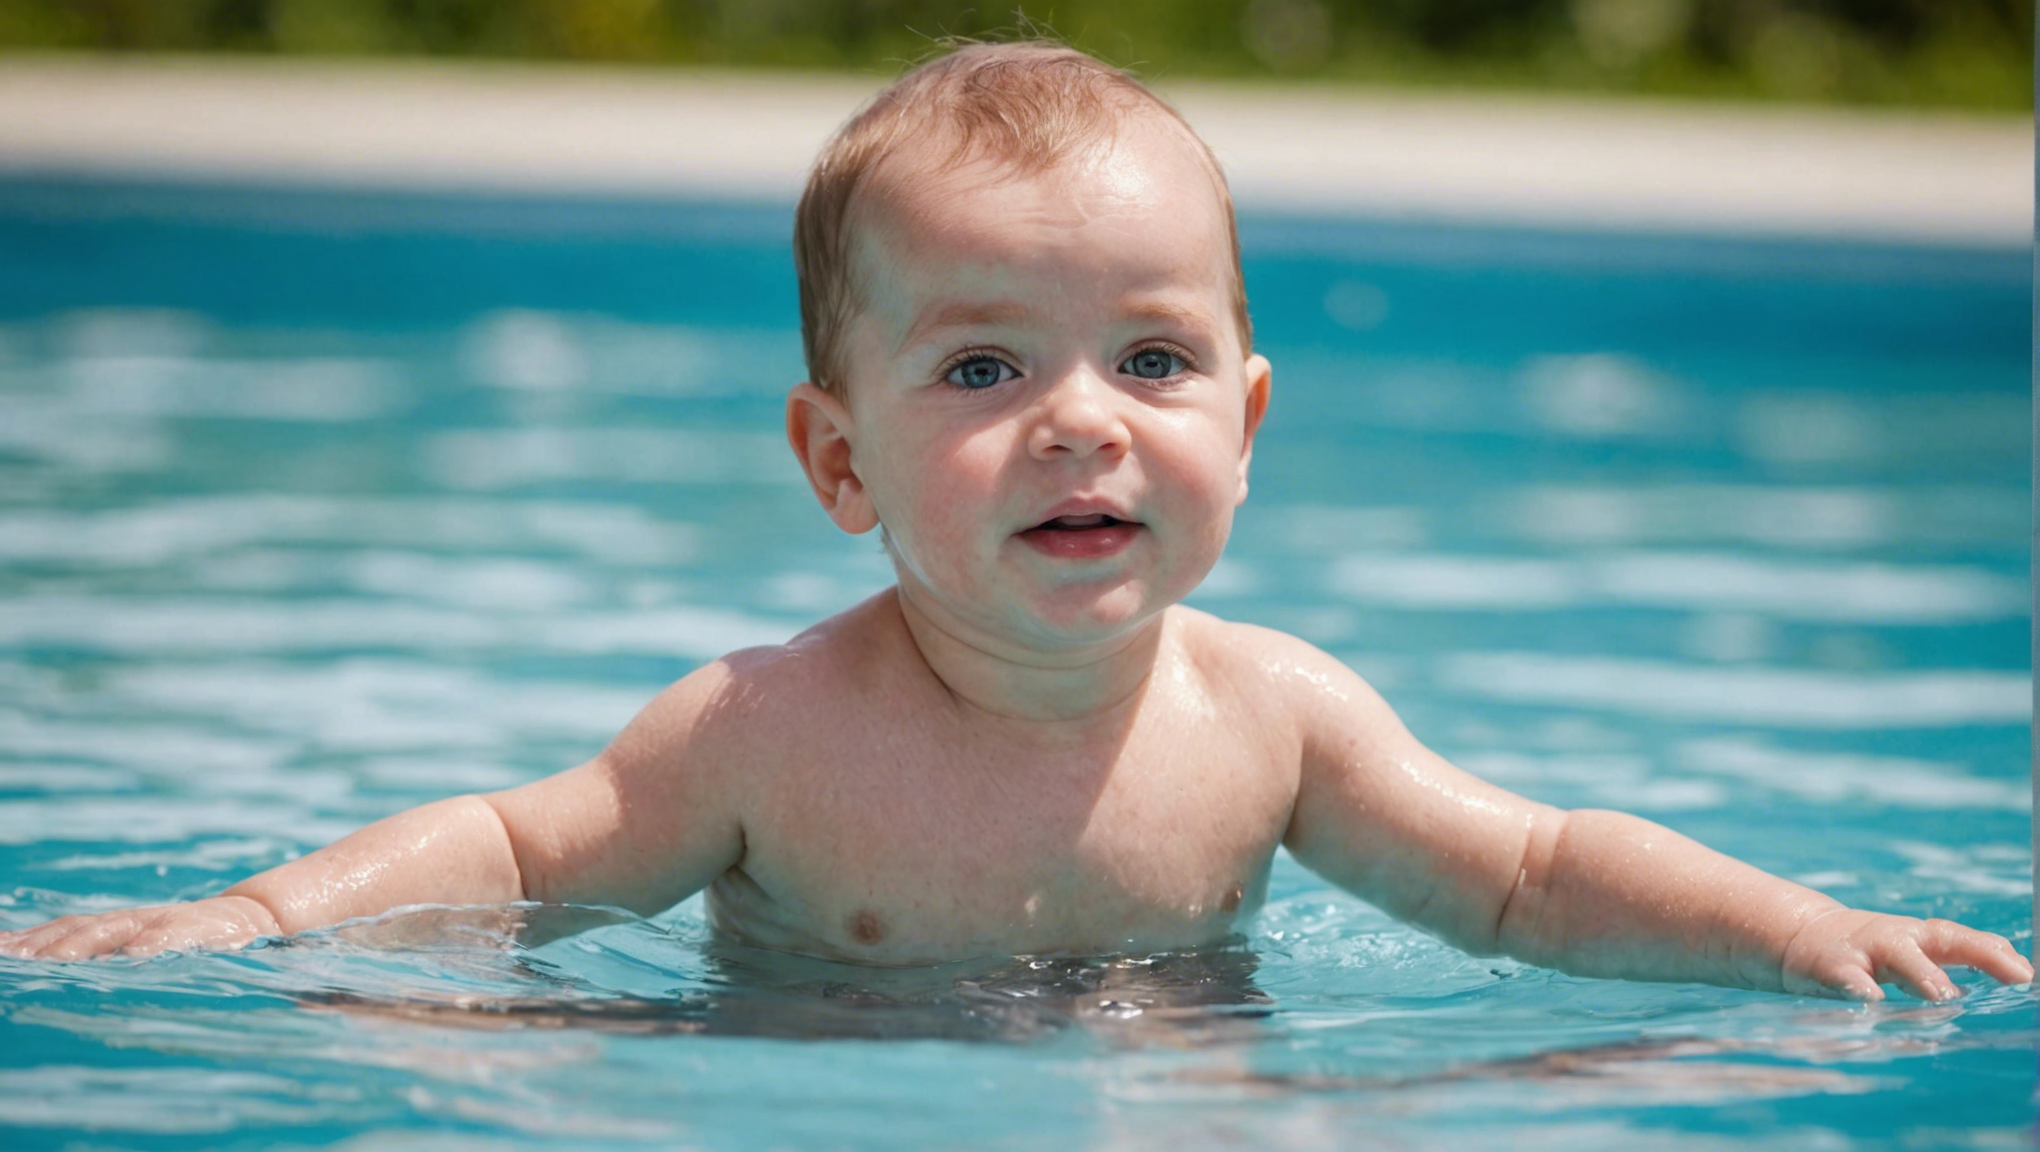 découvrez à quel âge les bébés peuvent commencer à profiter des bains et les meilleures pratiques pour assurer leur bien-être lors de ce moment privilégié.